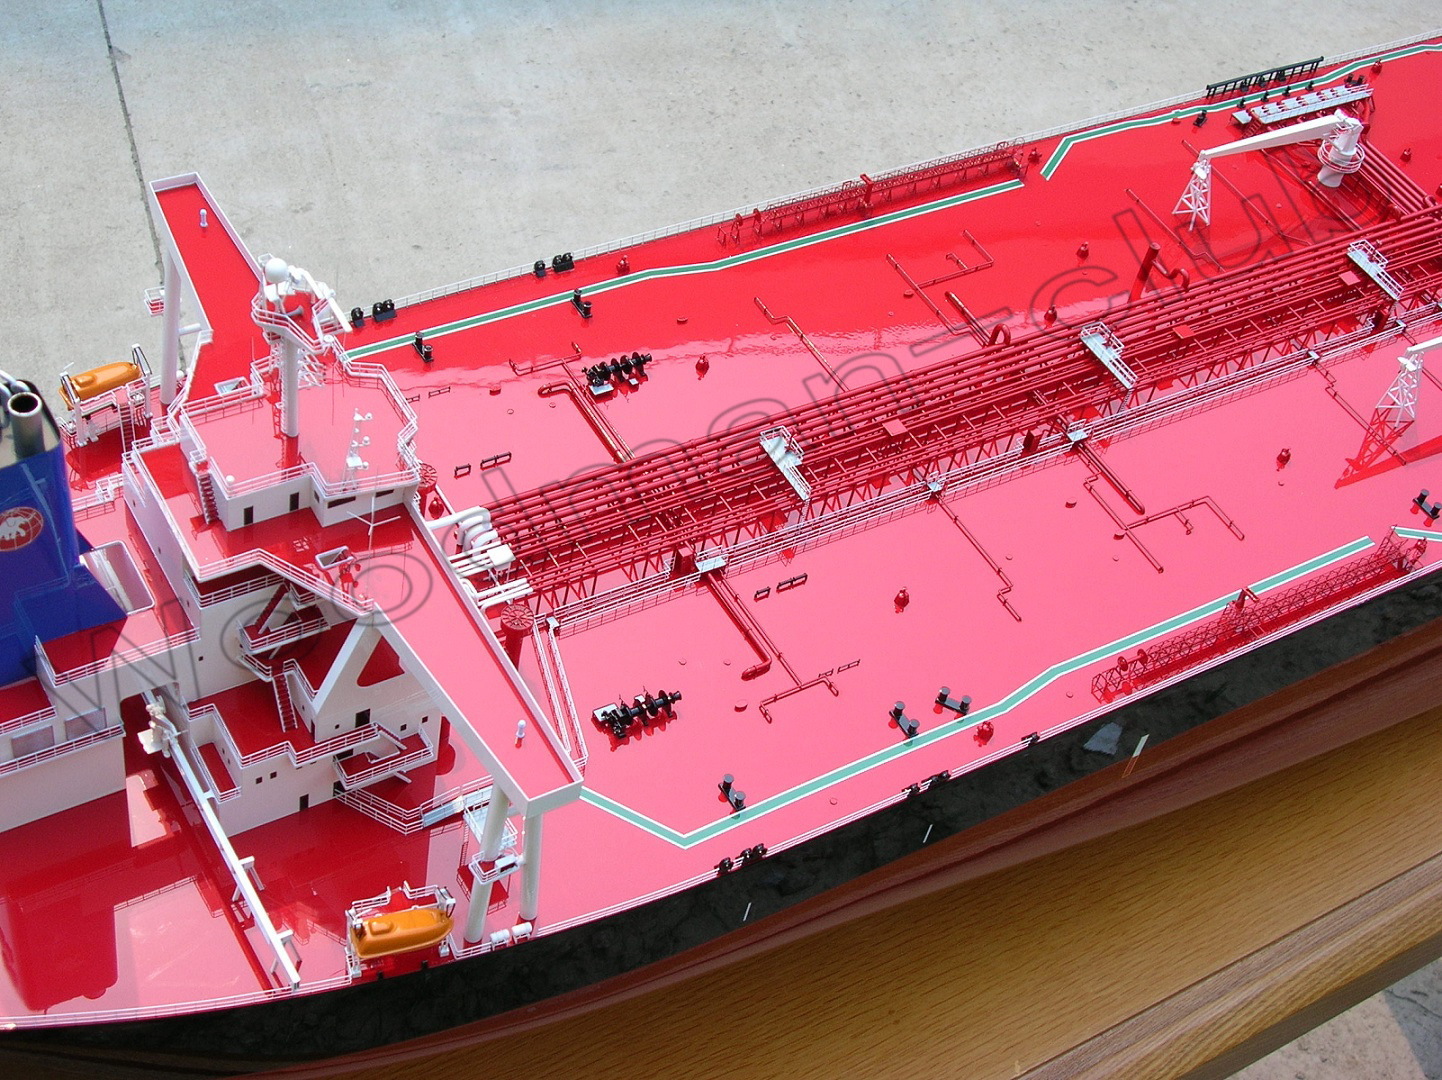 大型オイルタンカー精密模型完成品、ファイバーグラス製完成模型、大型オイルタンカー精密艦船模型完成品台座付の製作と通販専門店 ウッドマンクラブ